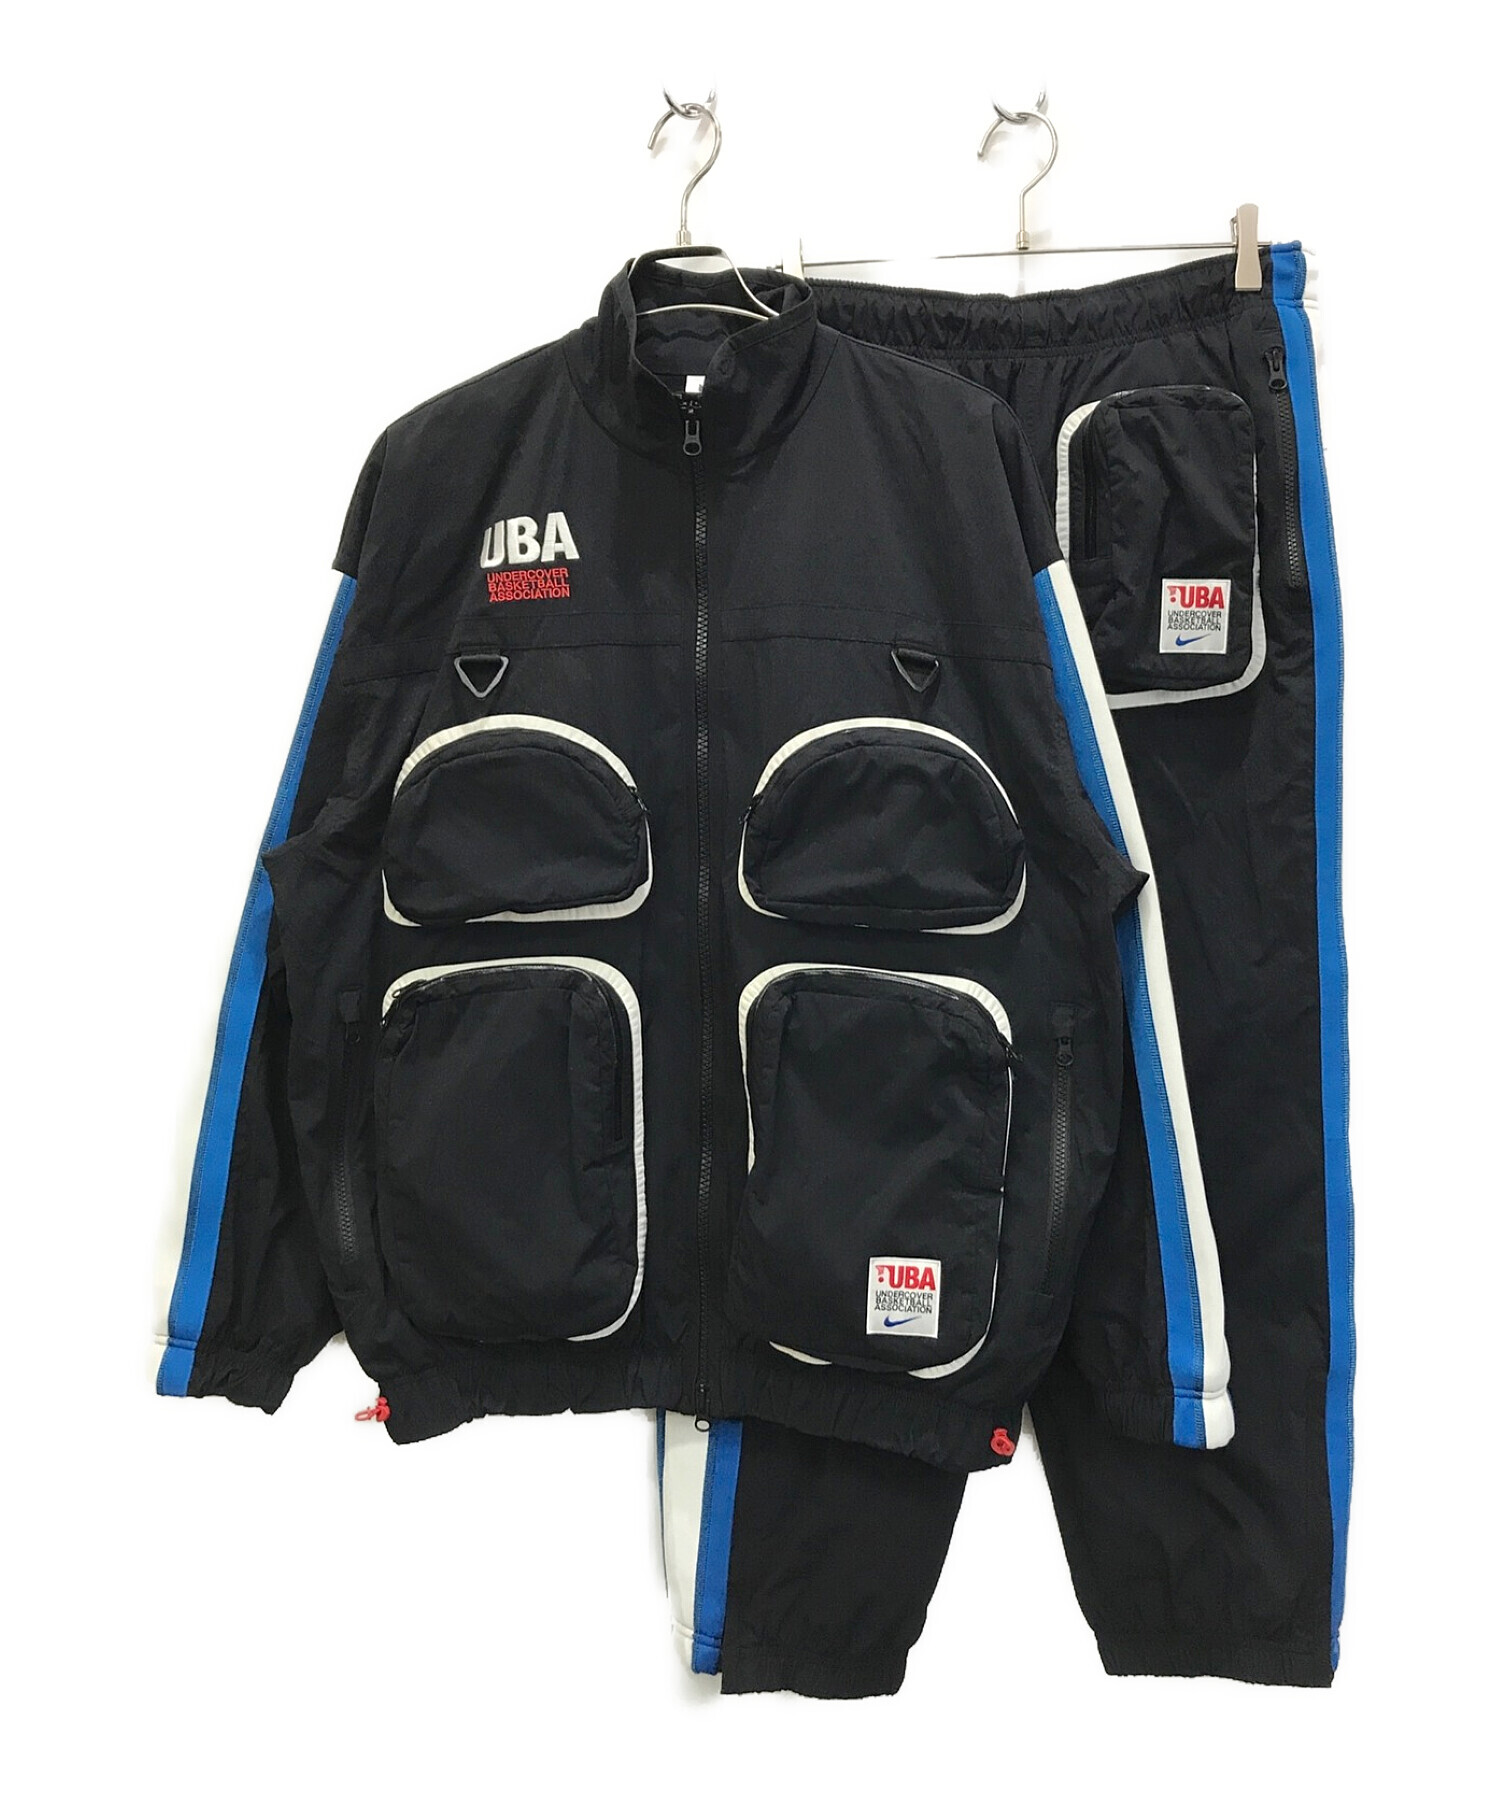 NIKE (ナイキ) UNDERCOVER (アンダーカバー) Track suit ブラック サイズ:L